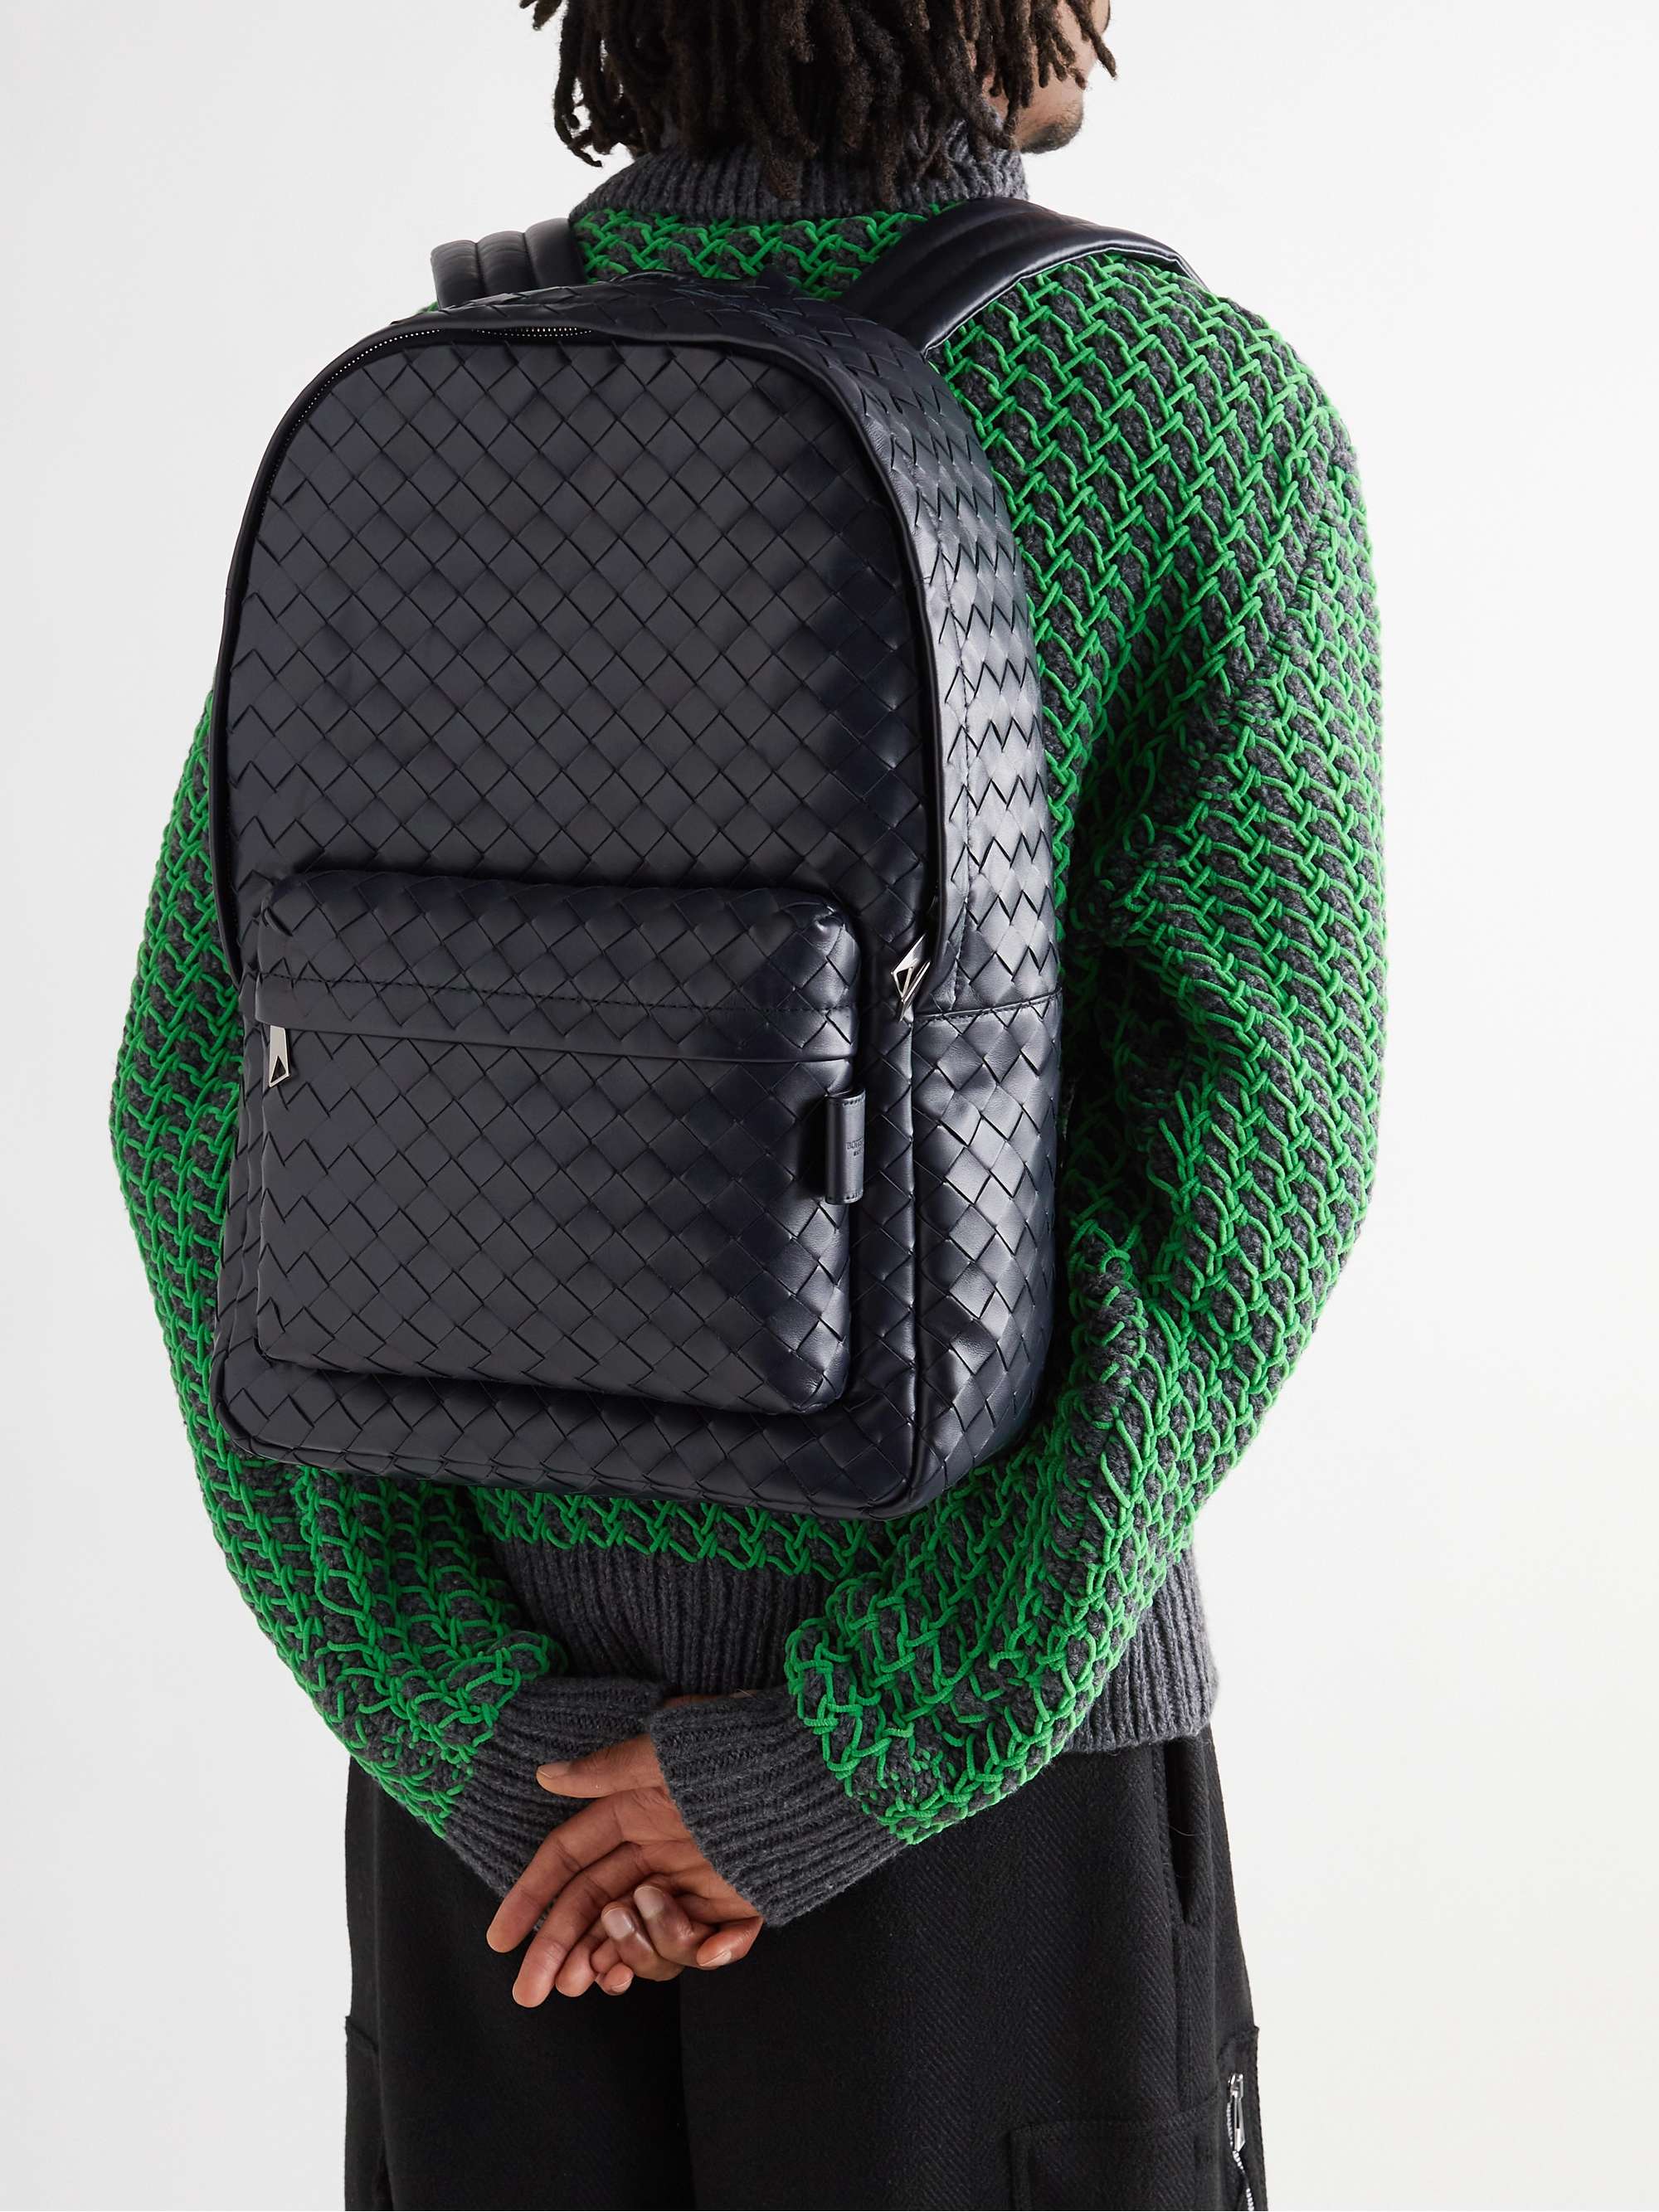 Bottega Veneta Intrecciato Calf Leather Backpack for Men